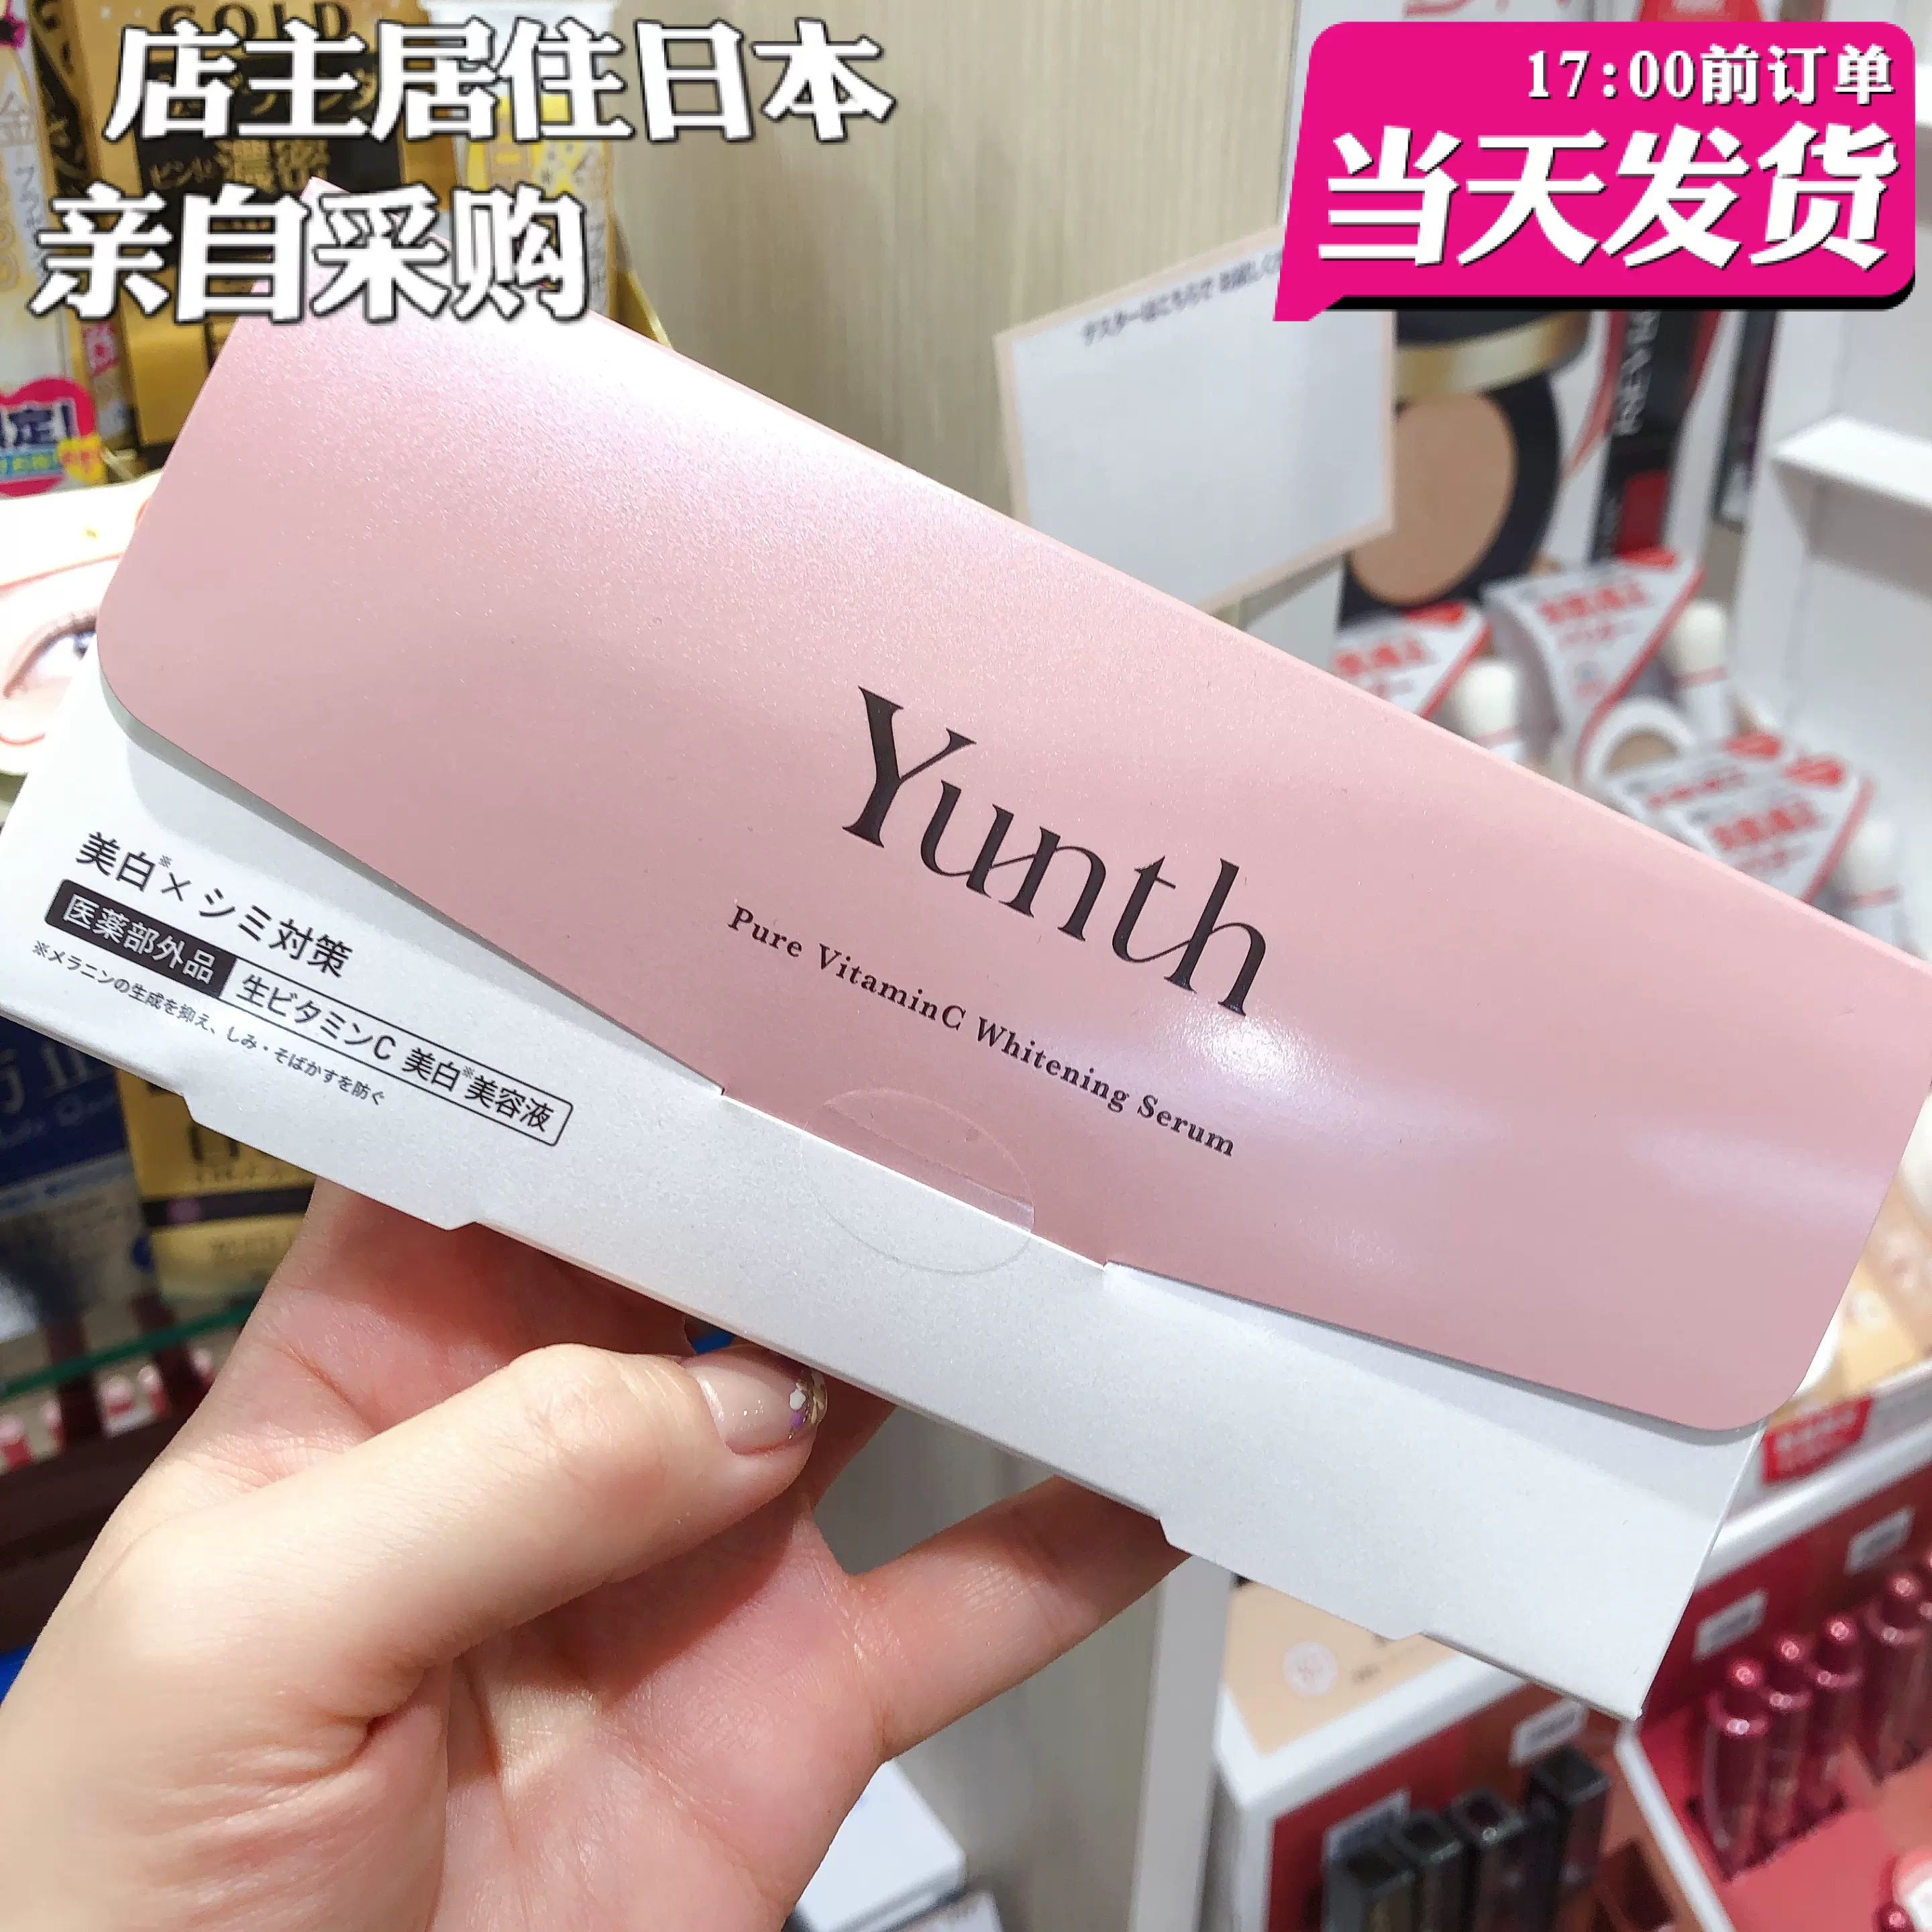 现货】日本购Yunth 精纯生VC导入美容液28天美白精华提亮N3-Taobao